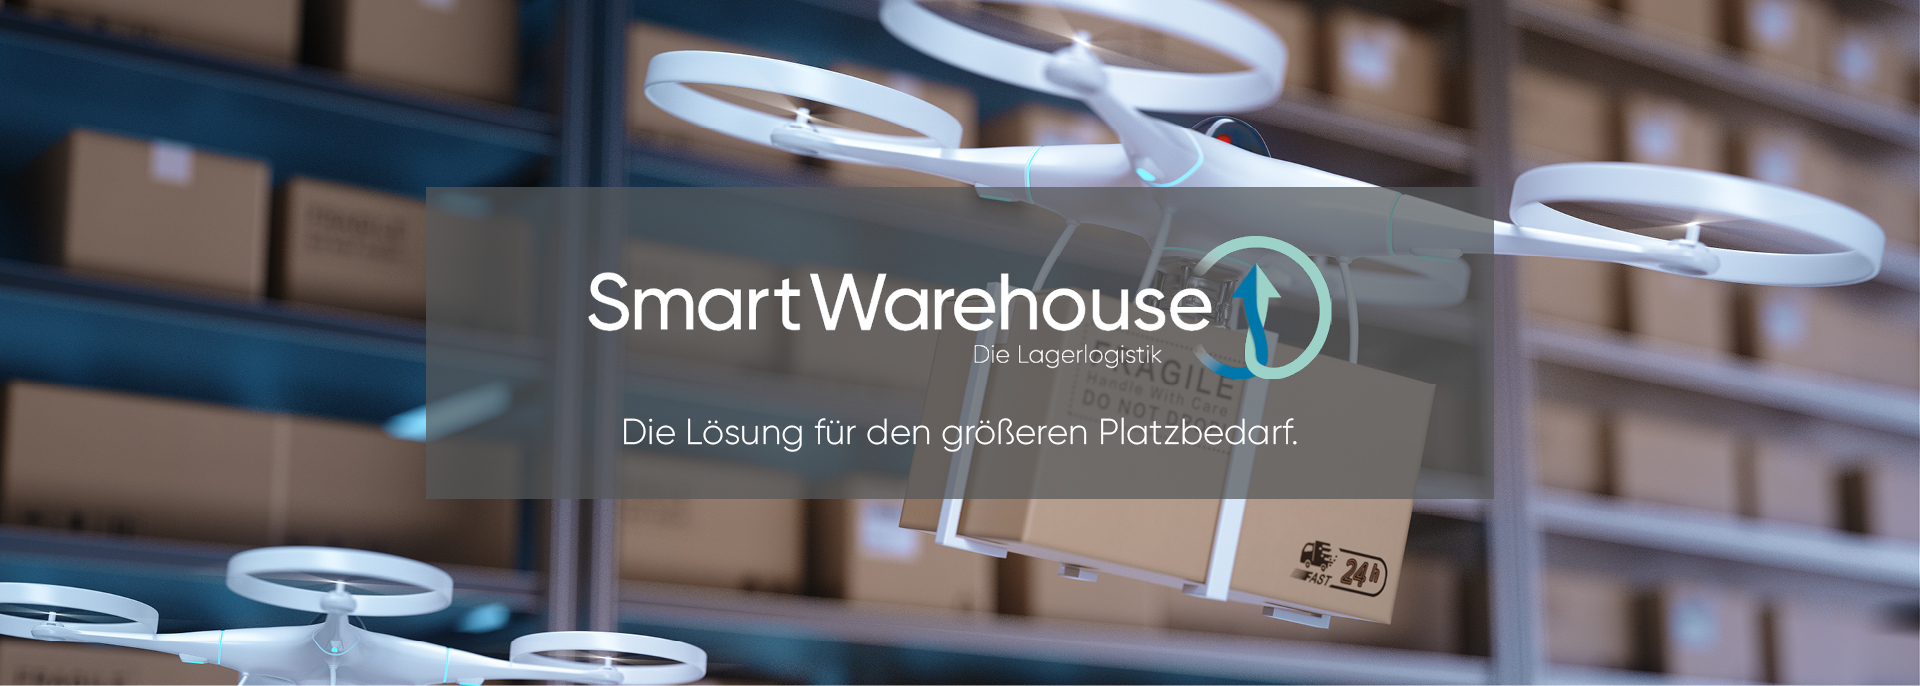 SmartWarehouse - eine Marke von Deventer